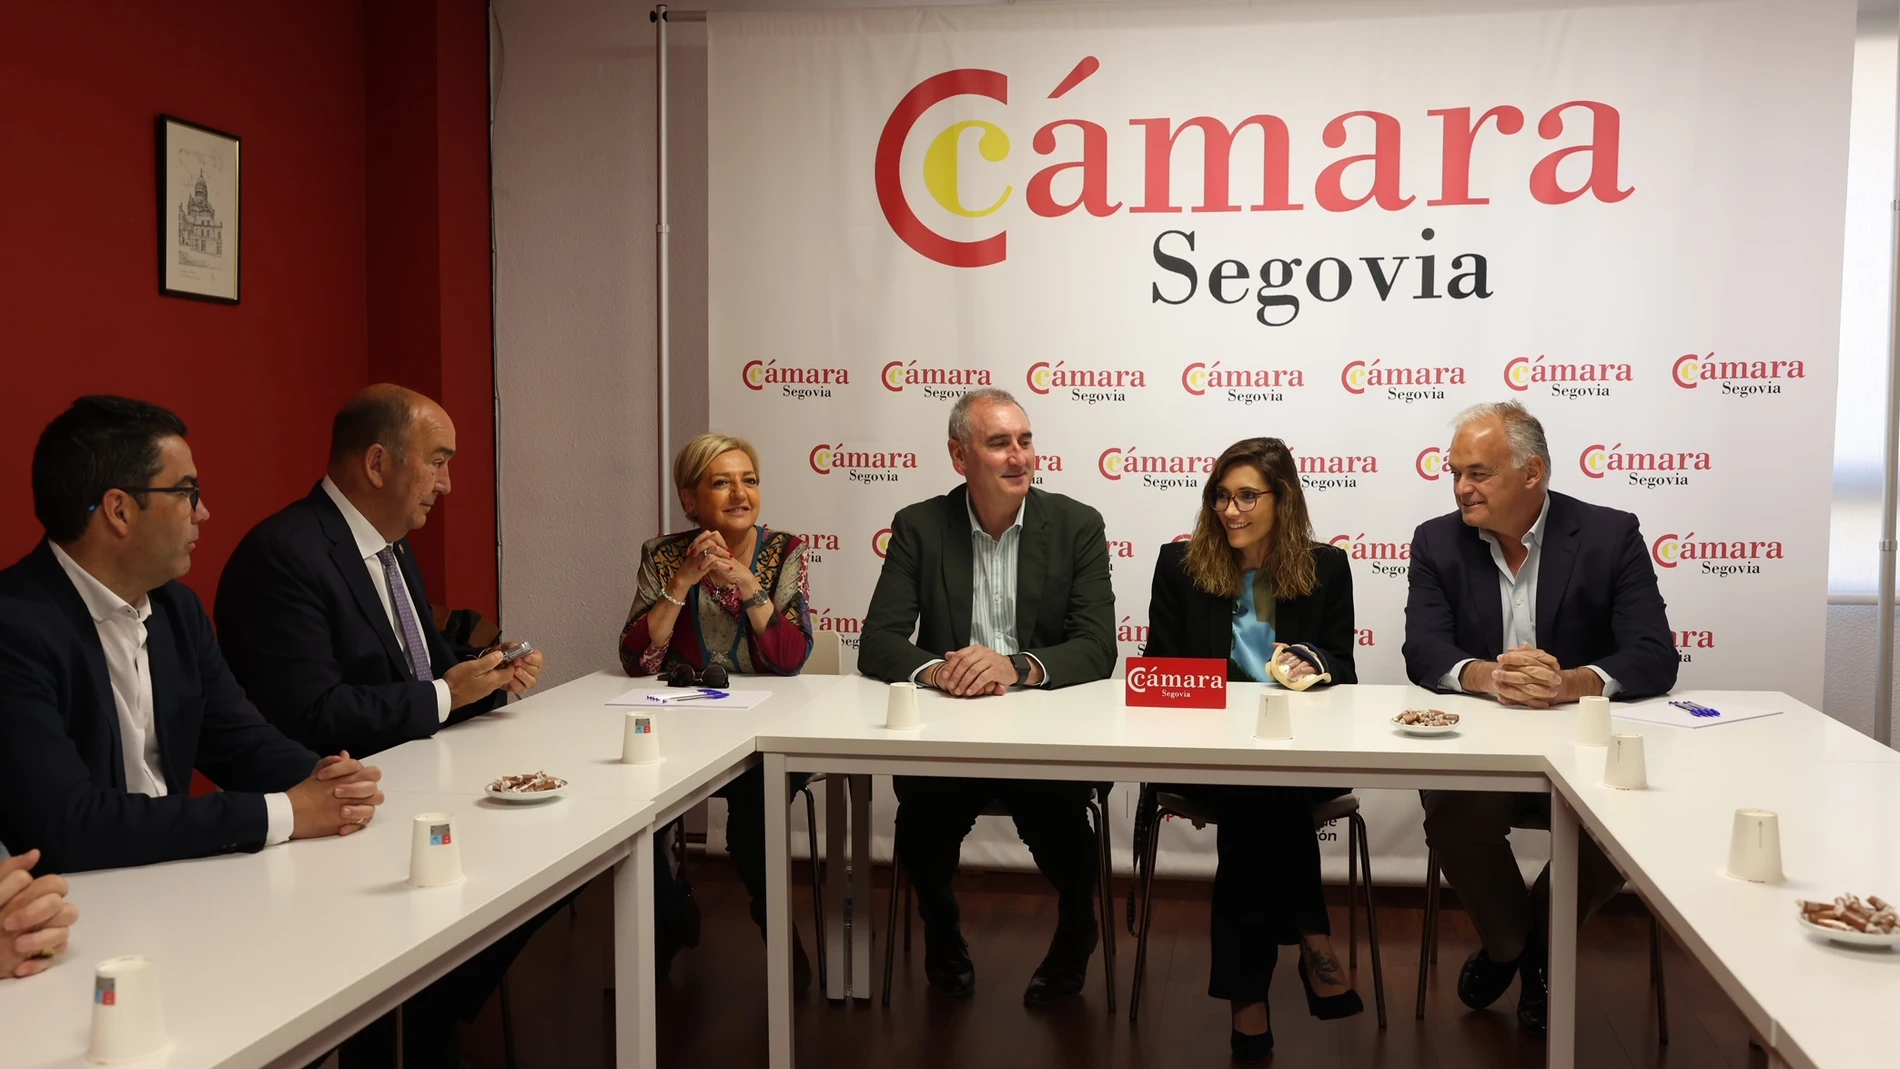 El candidato del PP de Segovia, José Mazarías, se reúne con la Cámara junto a González Pons, Paloma Sanz y Miguel Ángel de Vicente